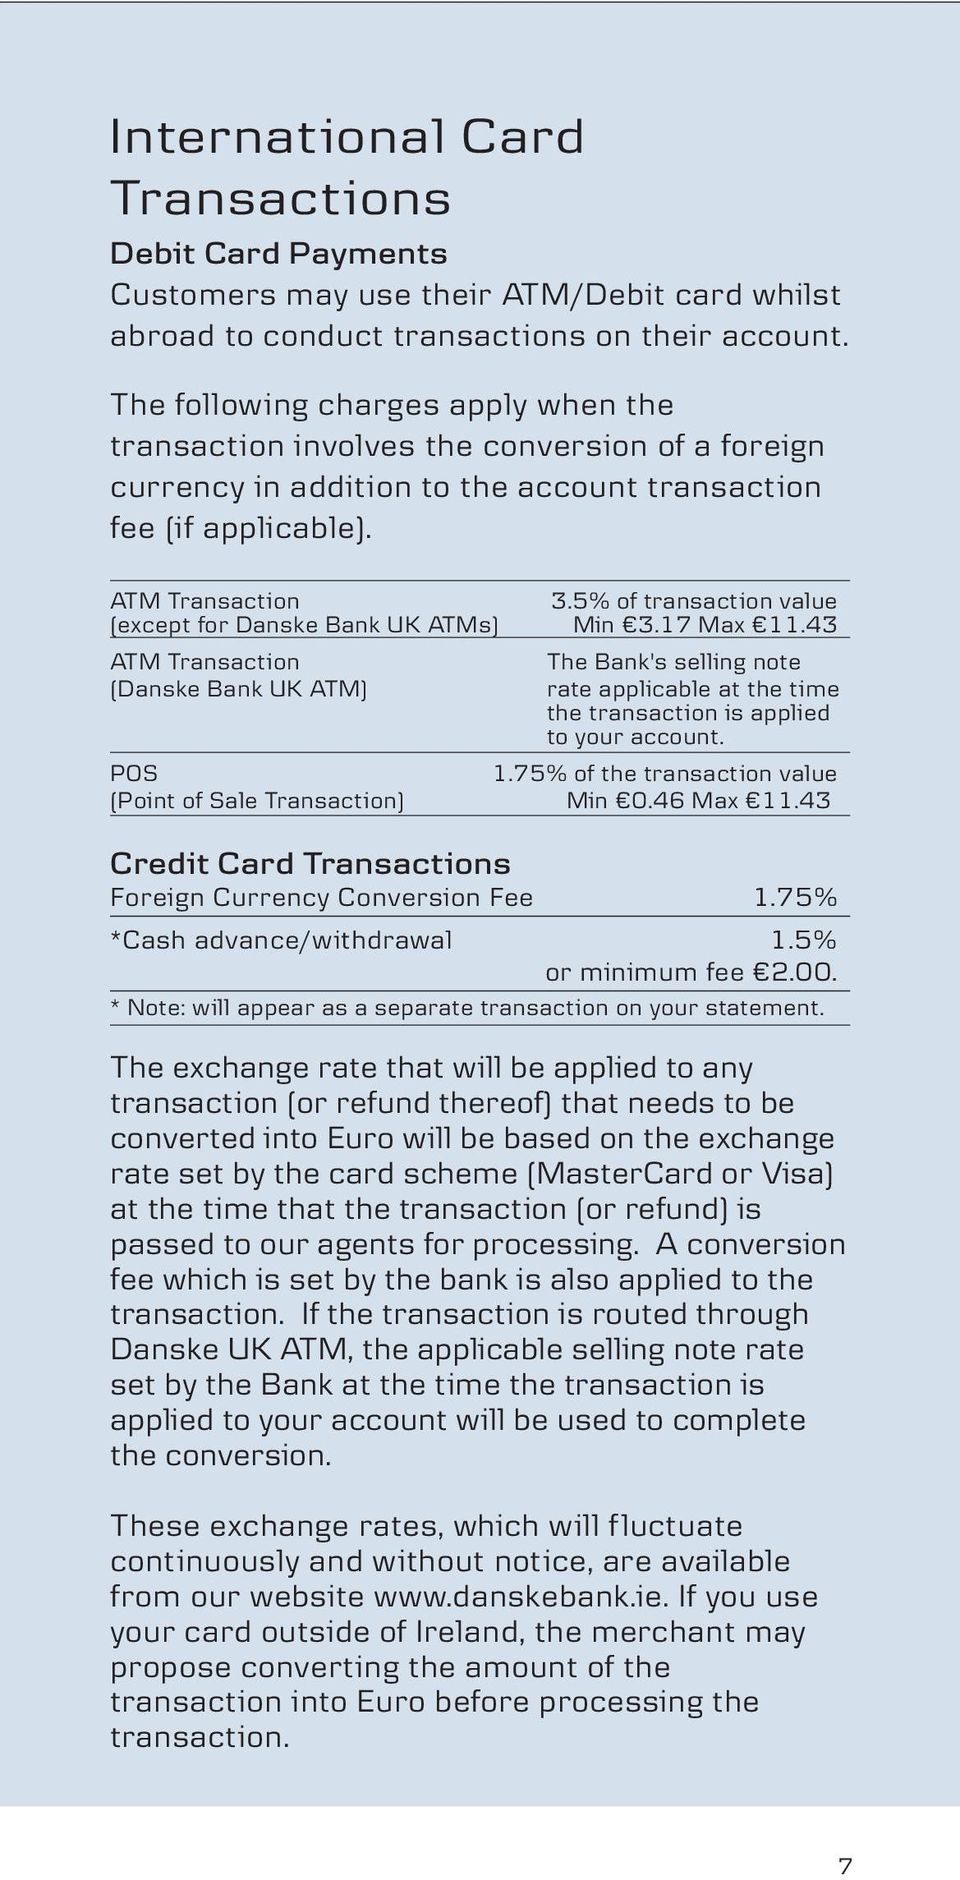 5% of transaction value (except for Danske Bank UK ATMs) Min 3.17 Max 11.